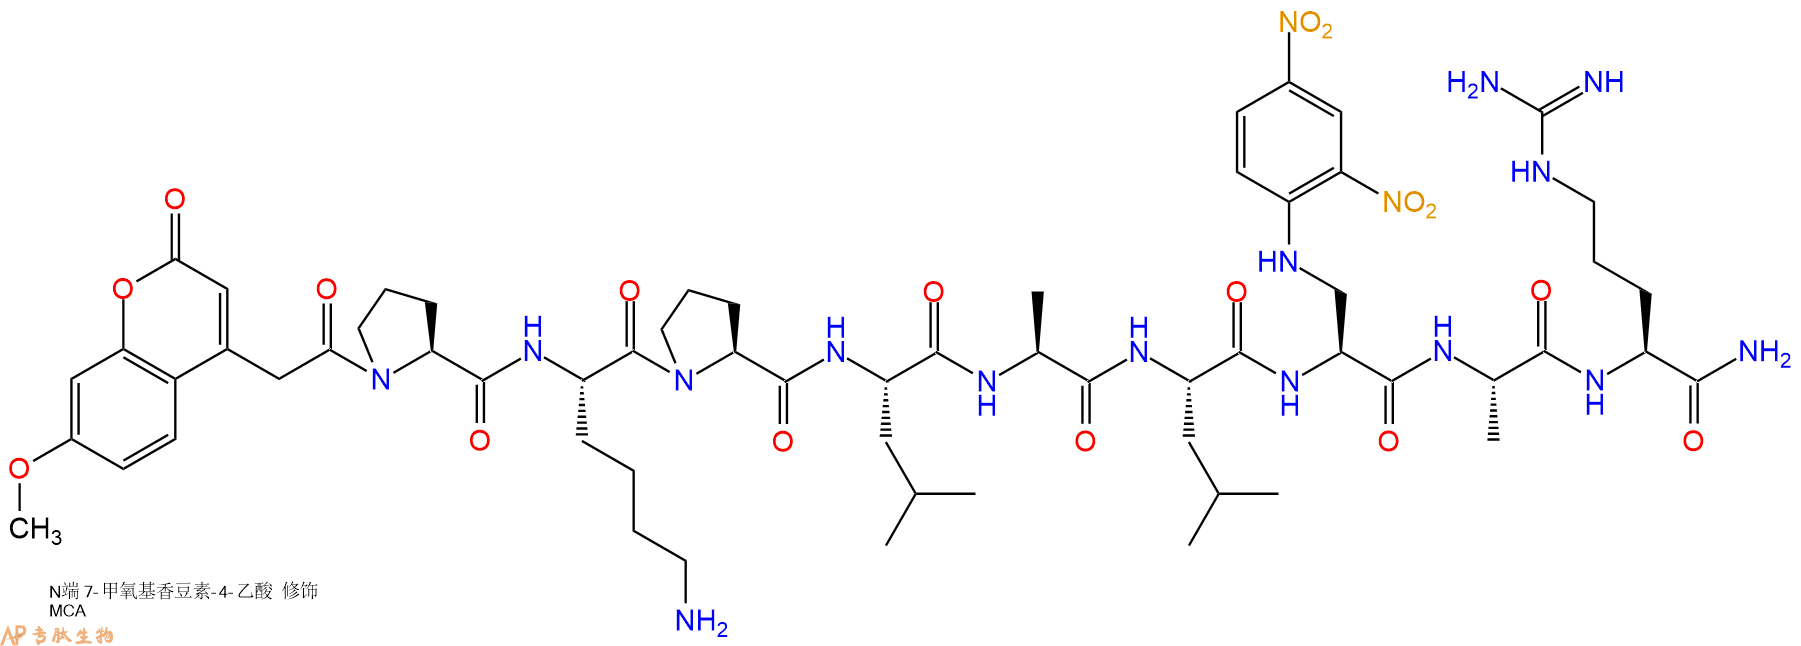 专肽生物产品九肽Mca-PKPLAL-Dap(Dnp)-AR-NH2396717-35-4